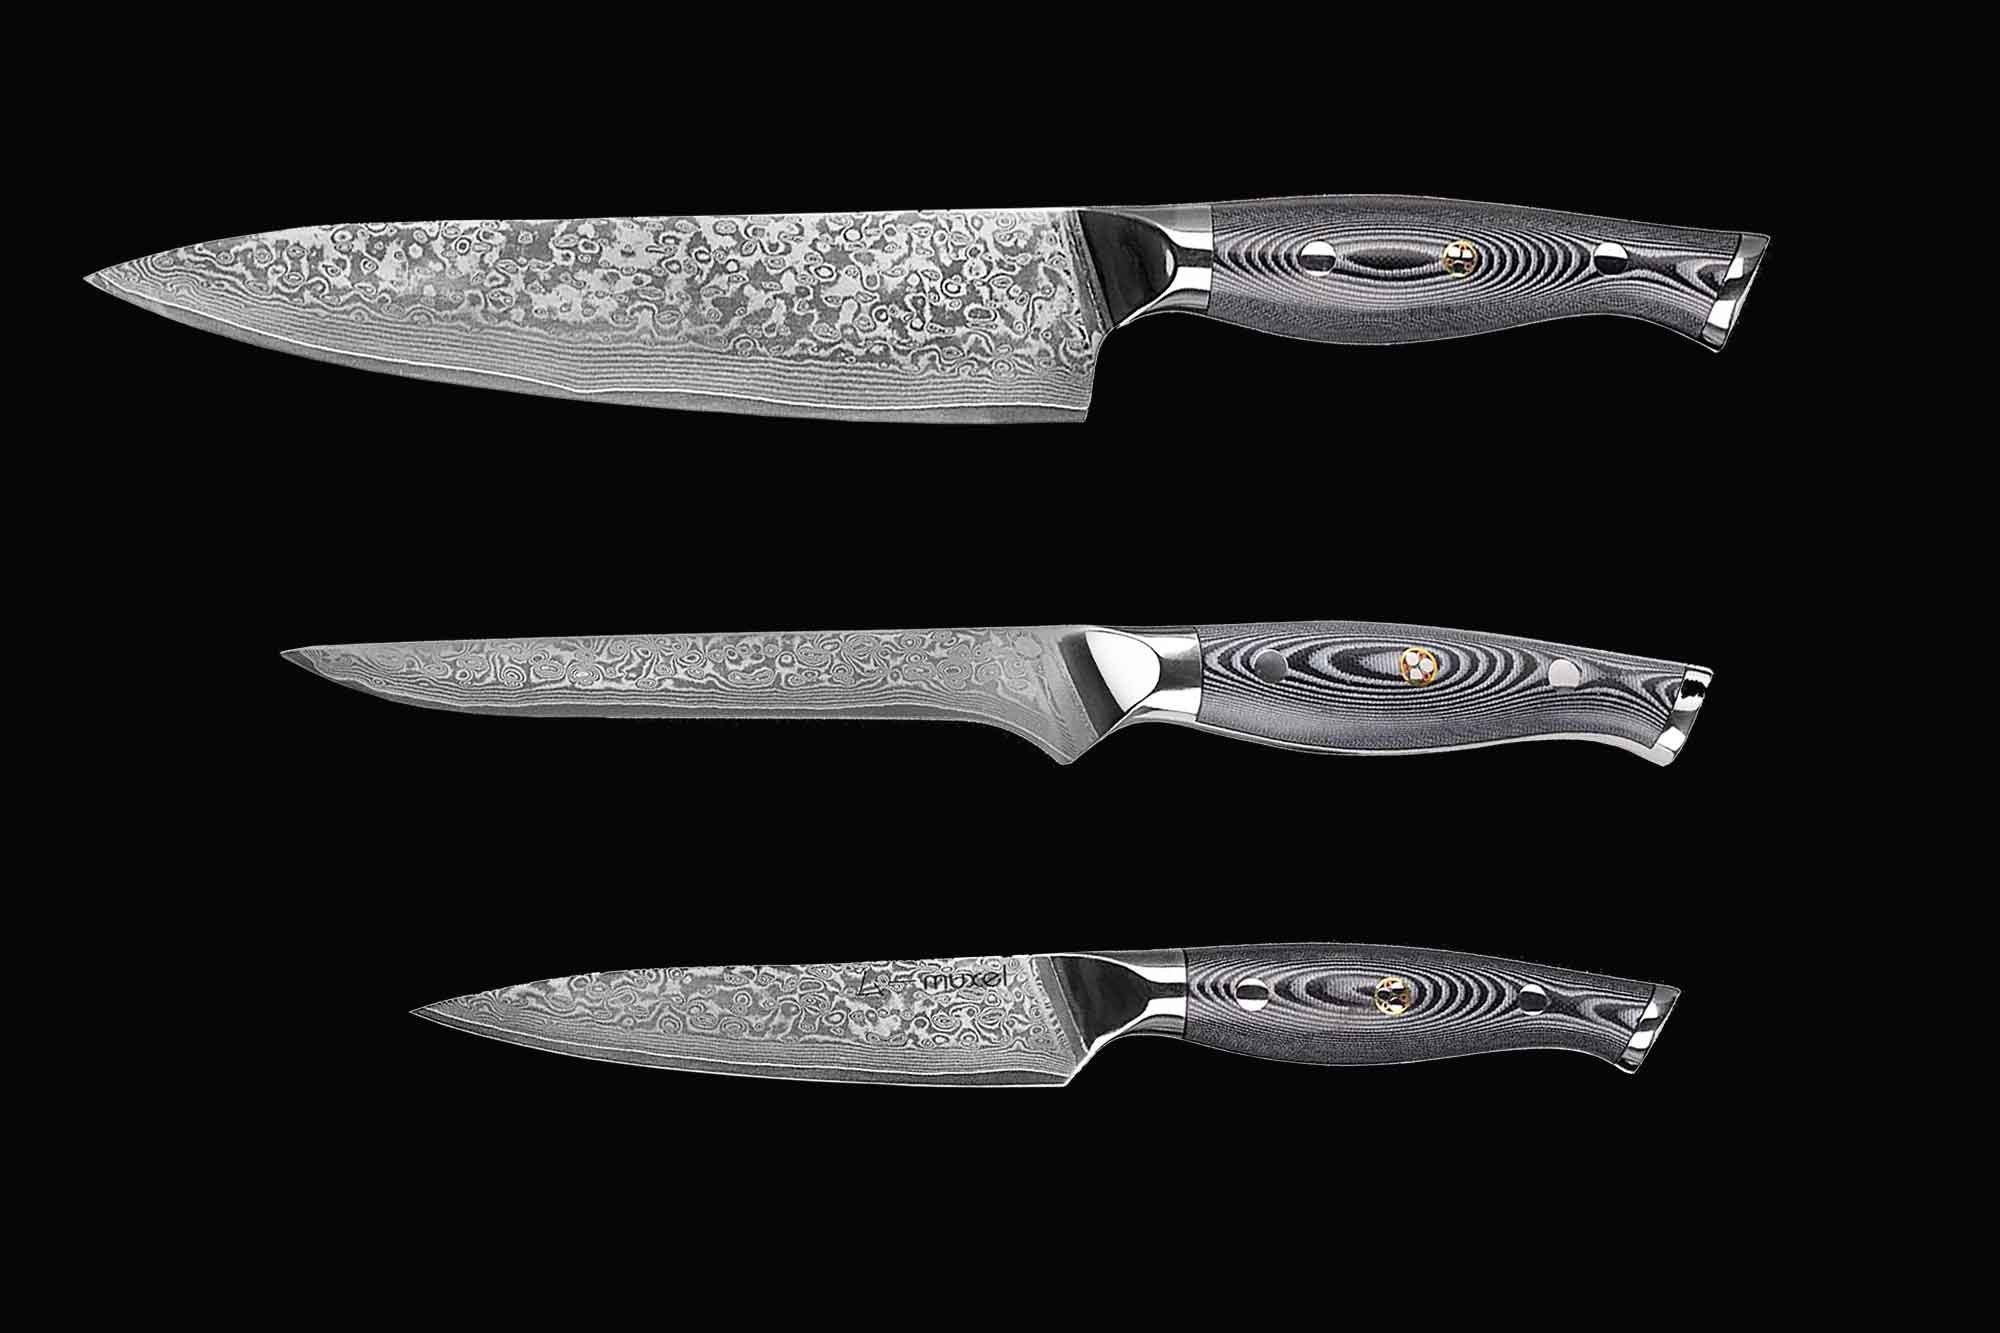 Muxel Ausbeinmesser Hochwertiges Messer Set Damast V10 Edelstahl 62